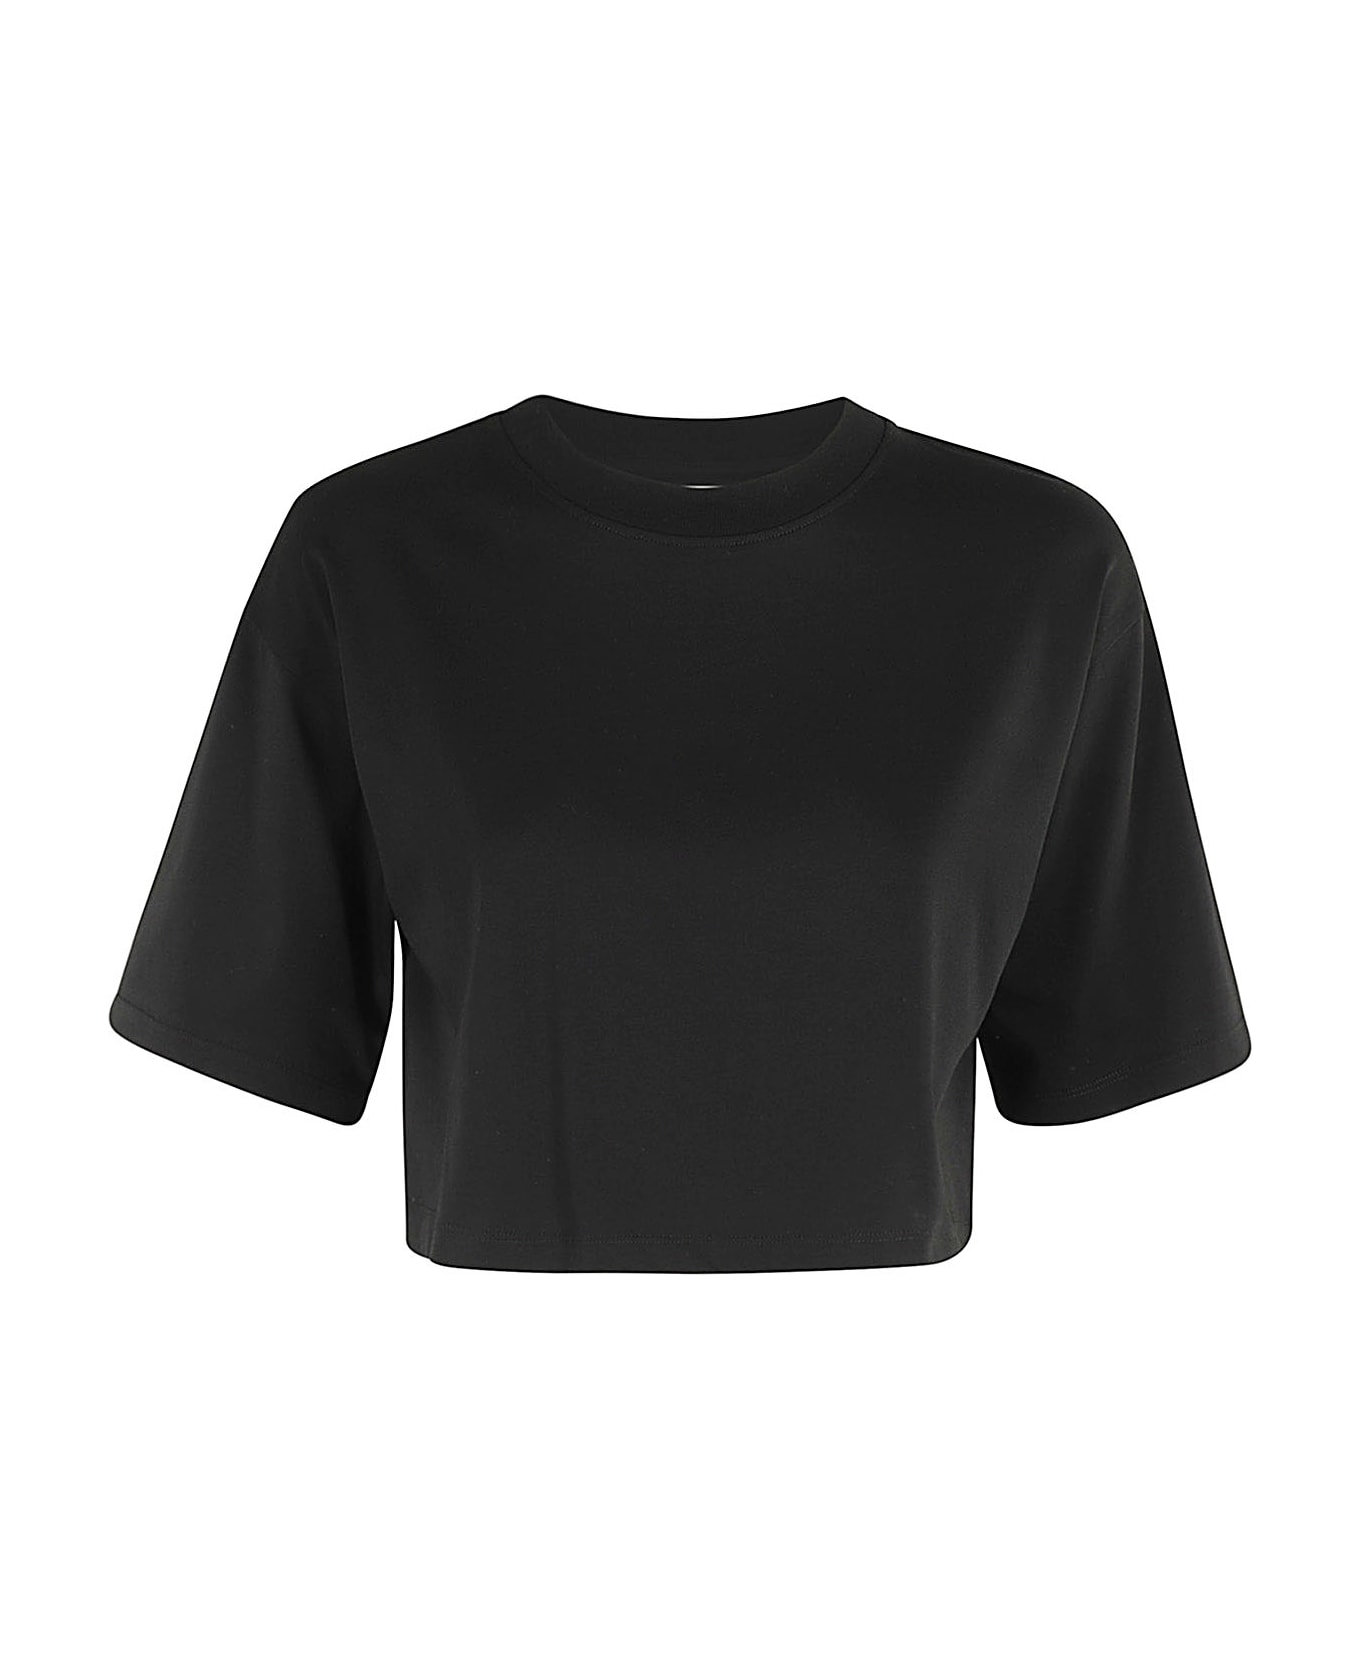 Loulou Studio Cropped Tshirt - Black Tシャツ